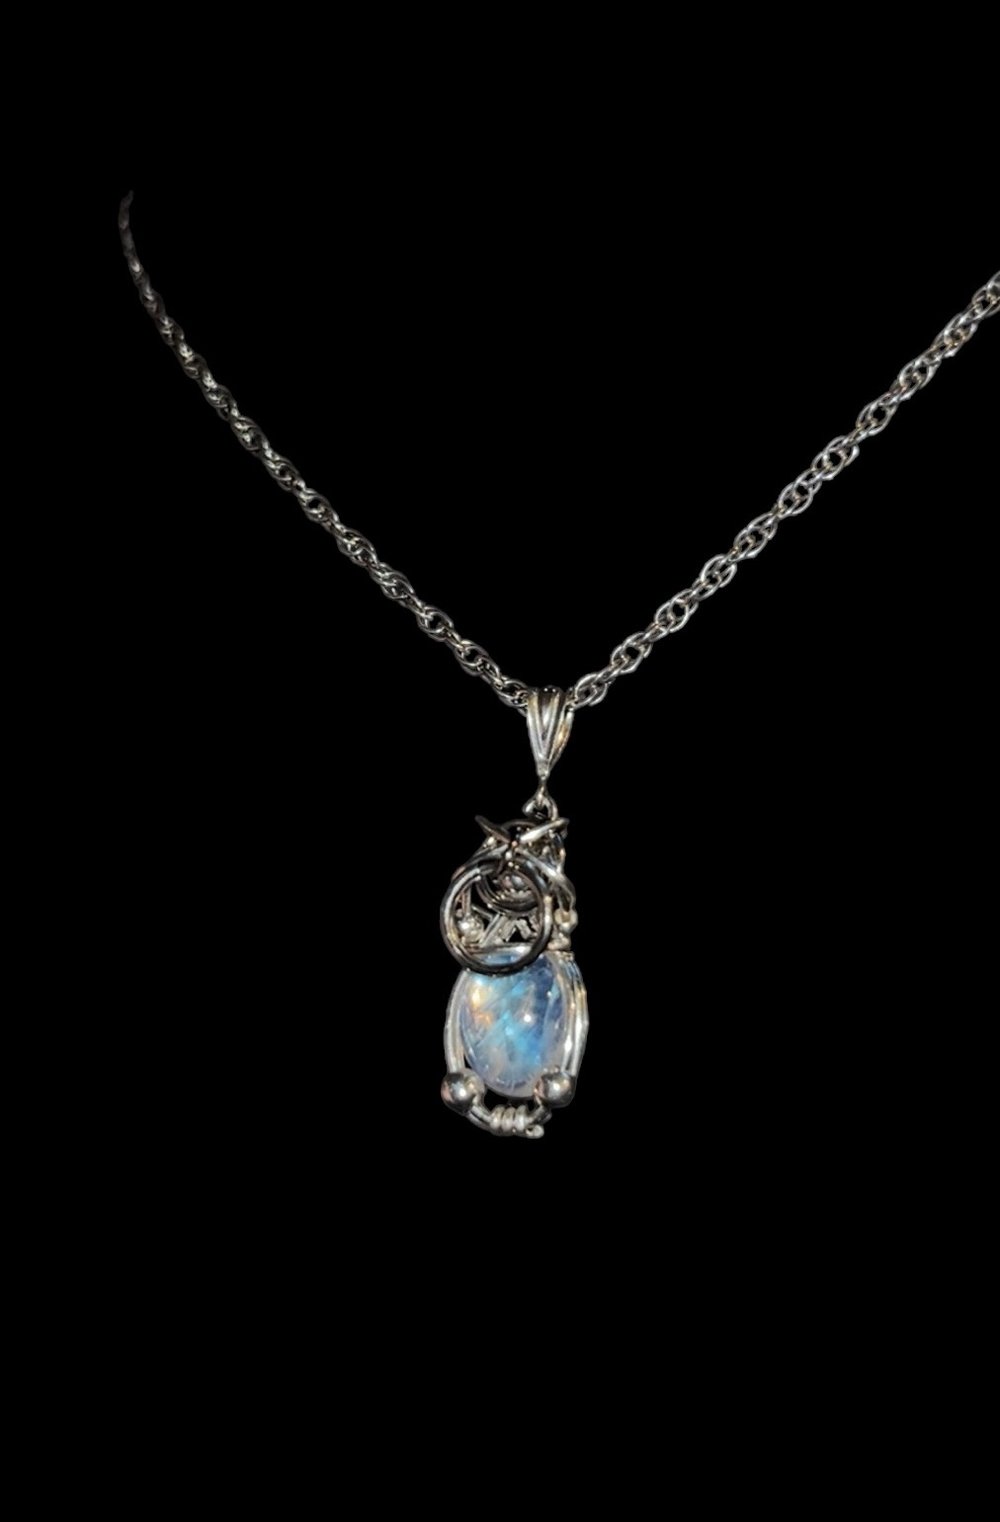 ⟢ Iris necklace ⟣